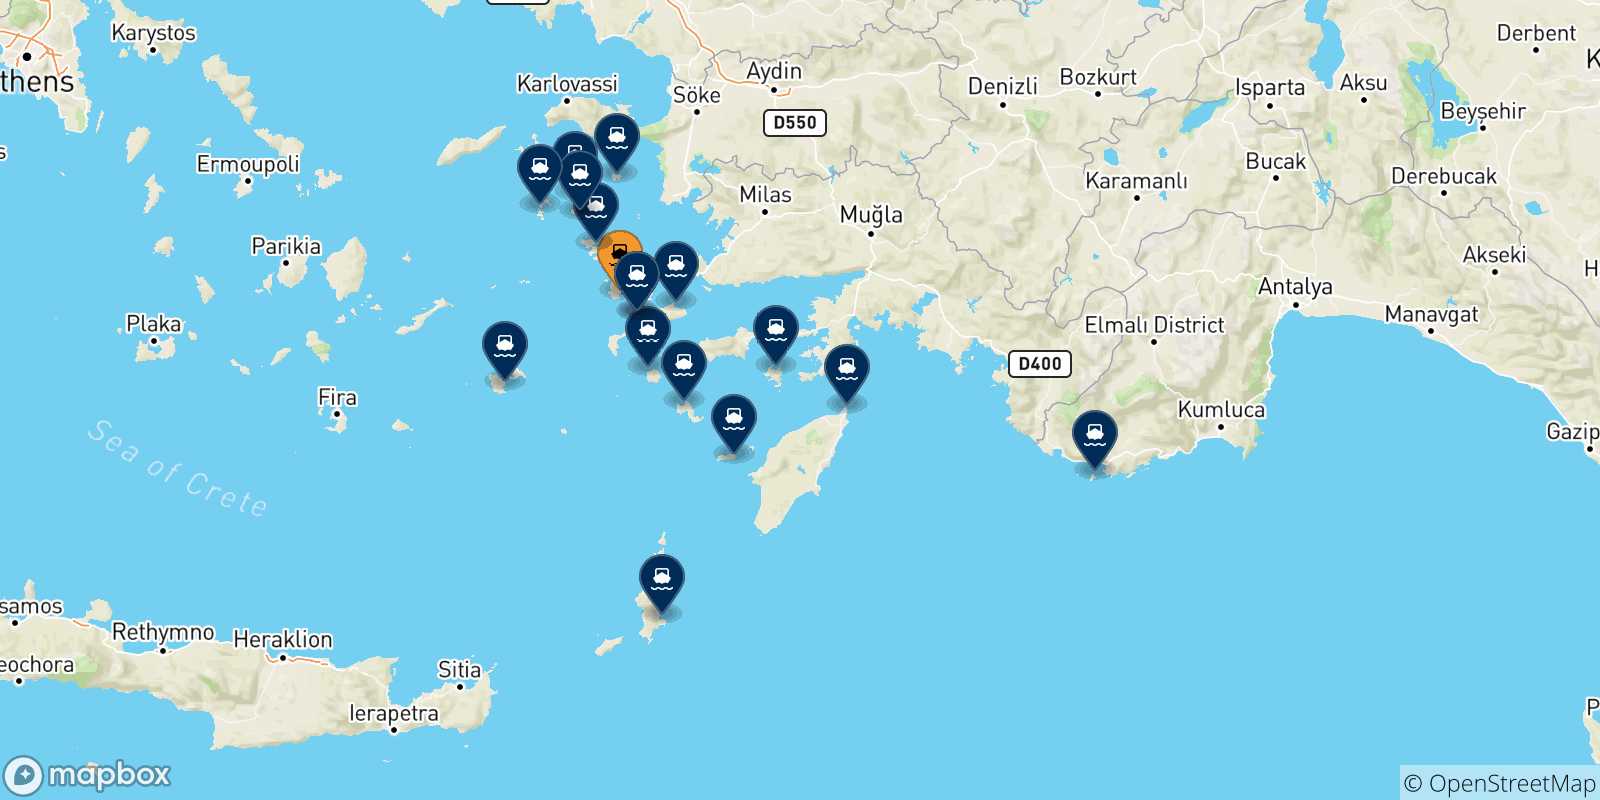 Mappa delle possibili rotte tra Kalymnos e le Isole Dodecaneso